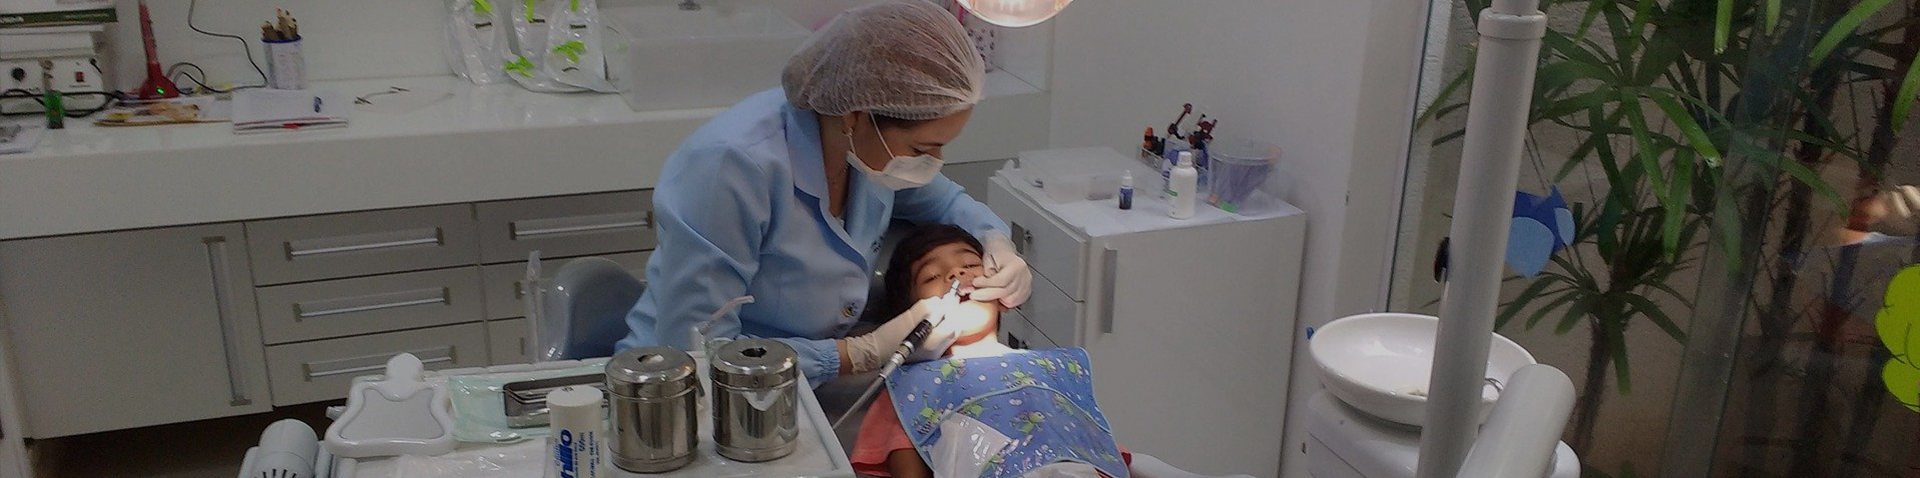 Dentista e seu paciente em um procedimento dentário